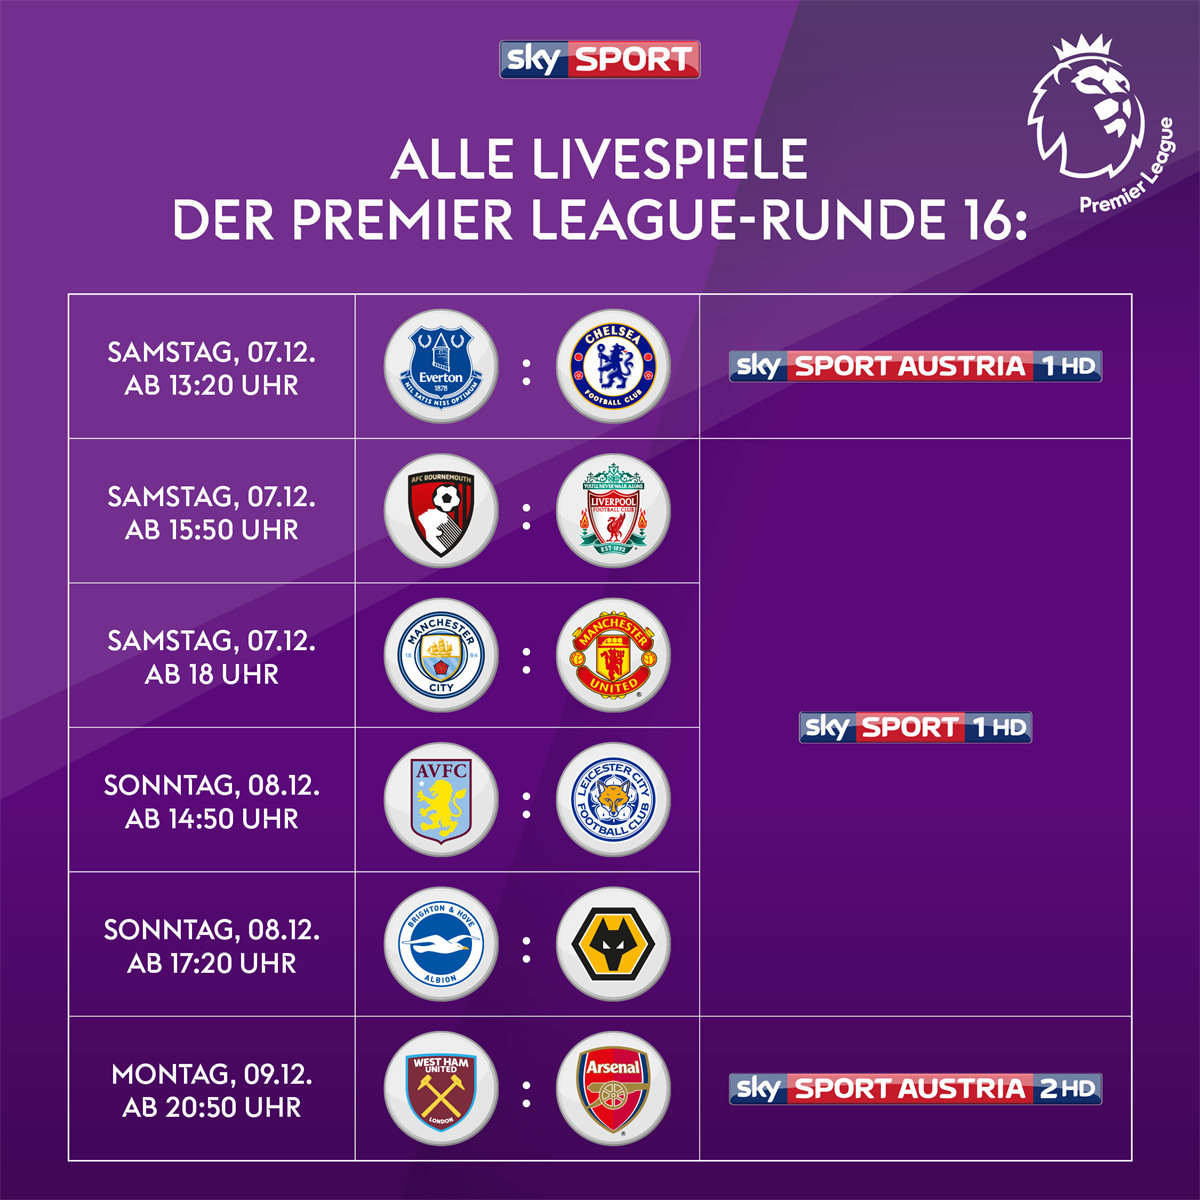 Premier League Runde 16